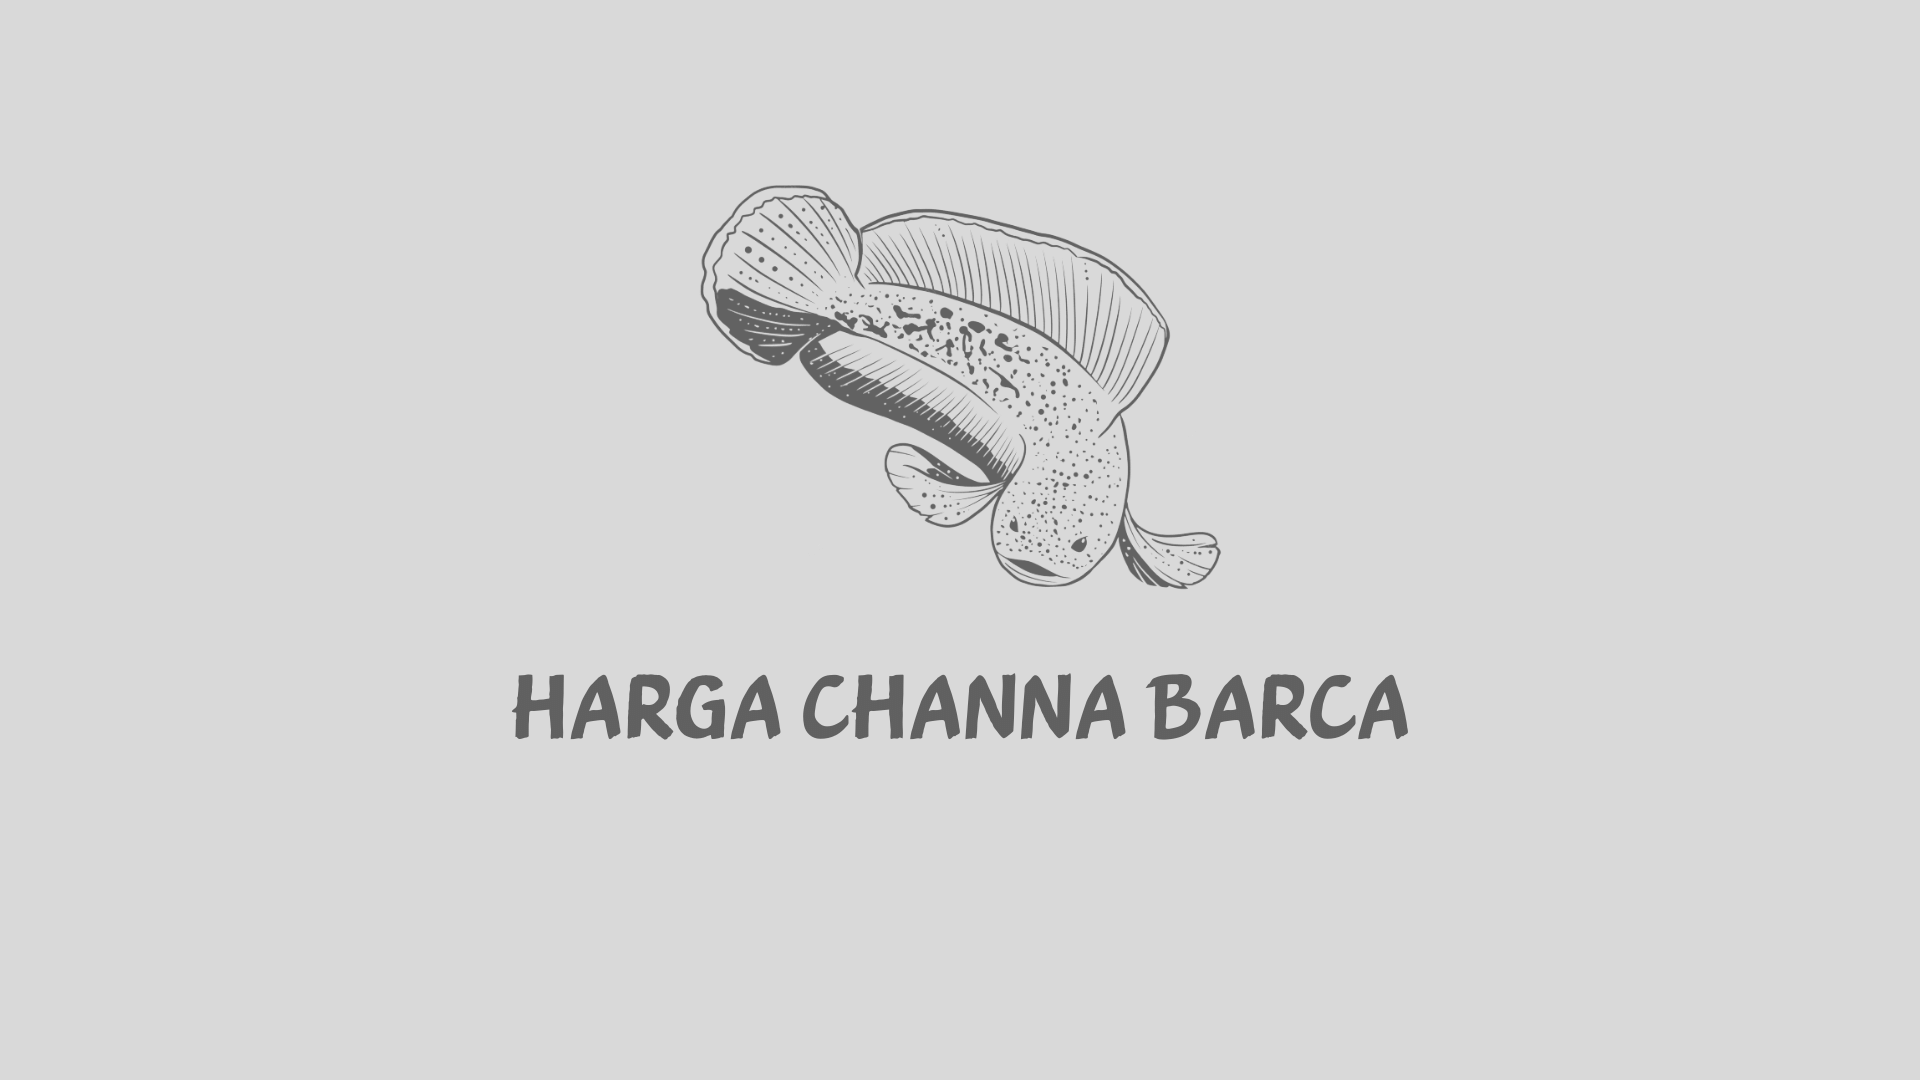 Harga Channa Barca